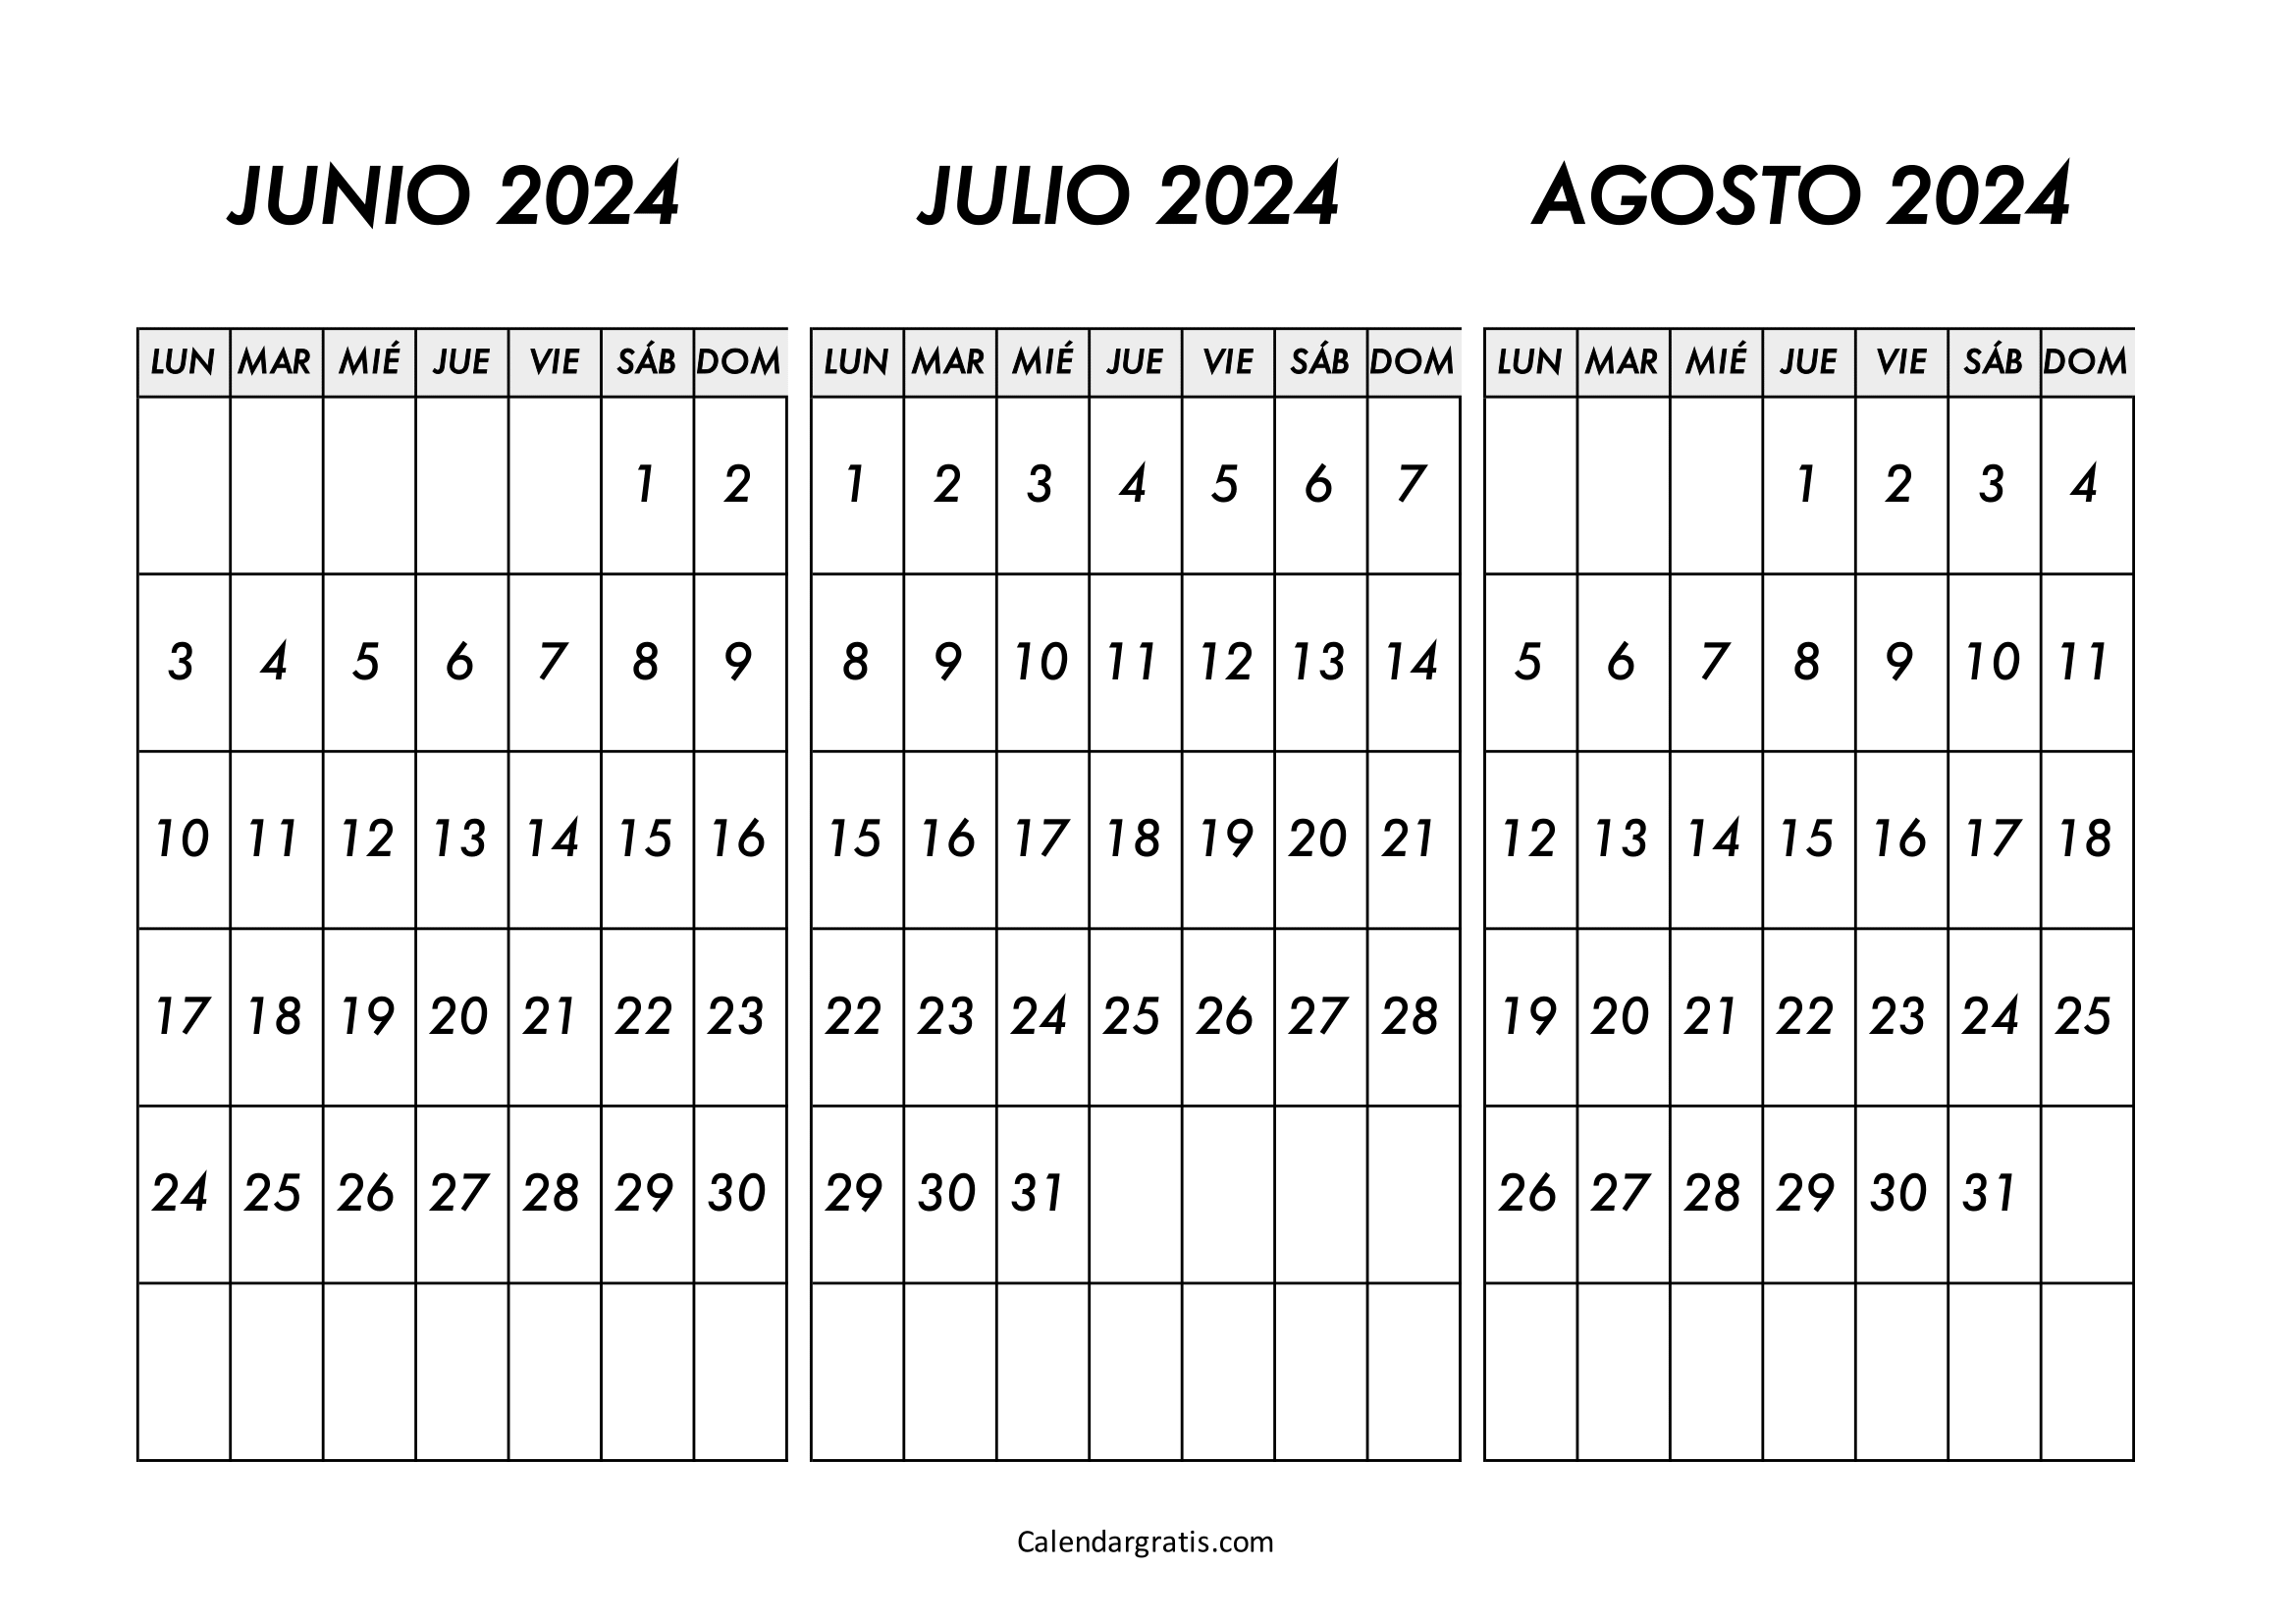 Calendario junio julio y agosto 2024 gratis